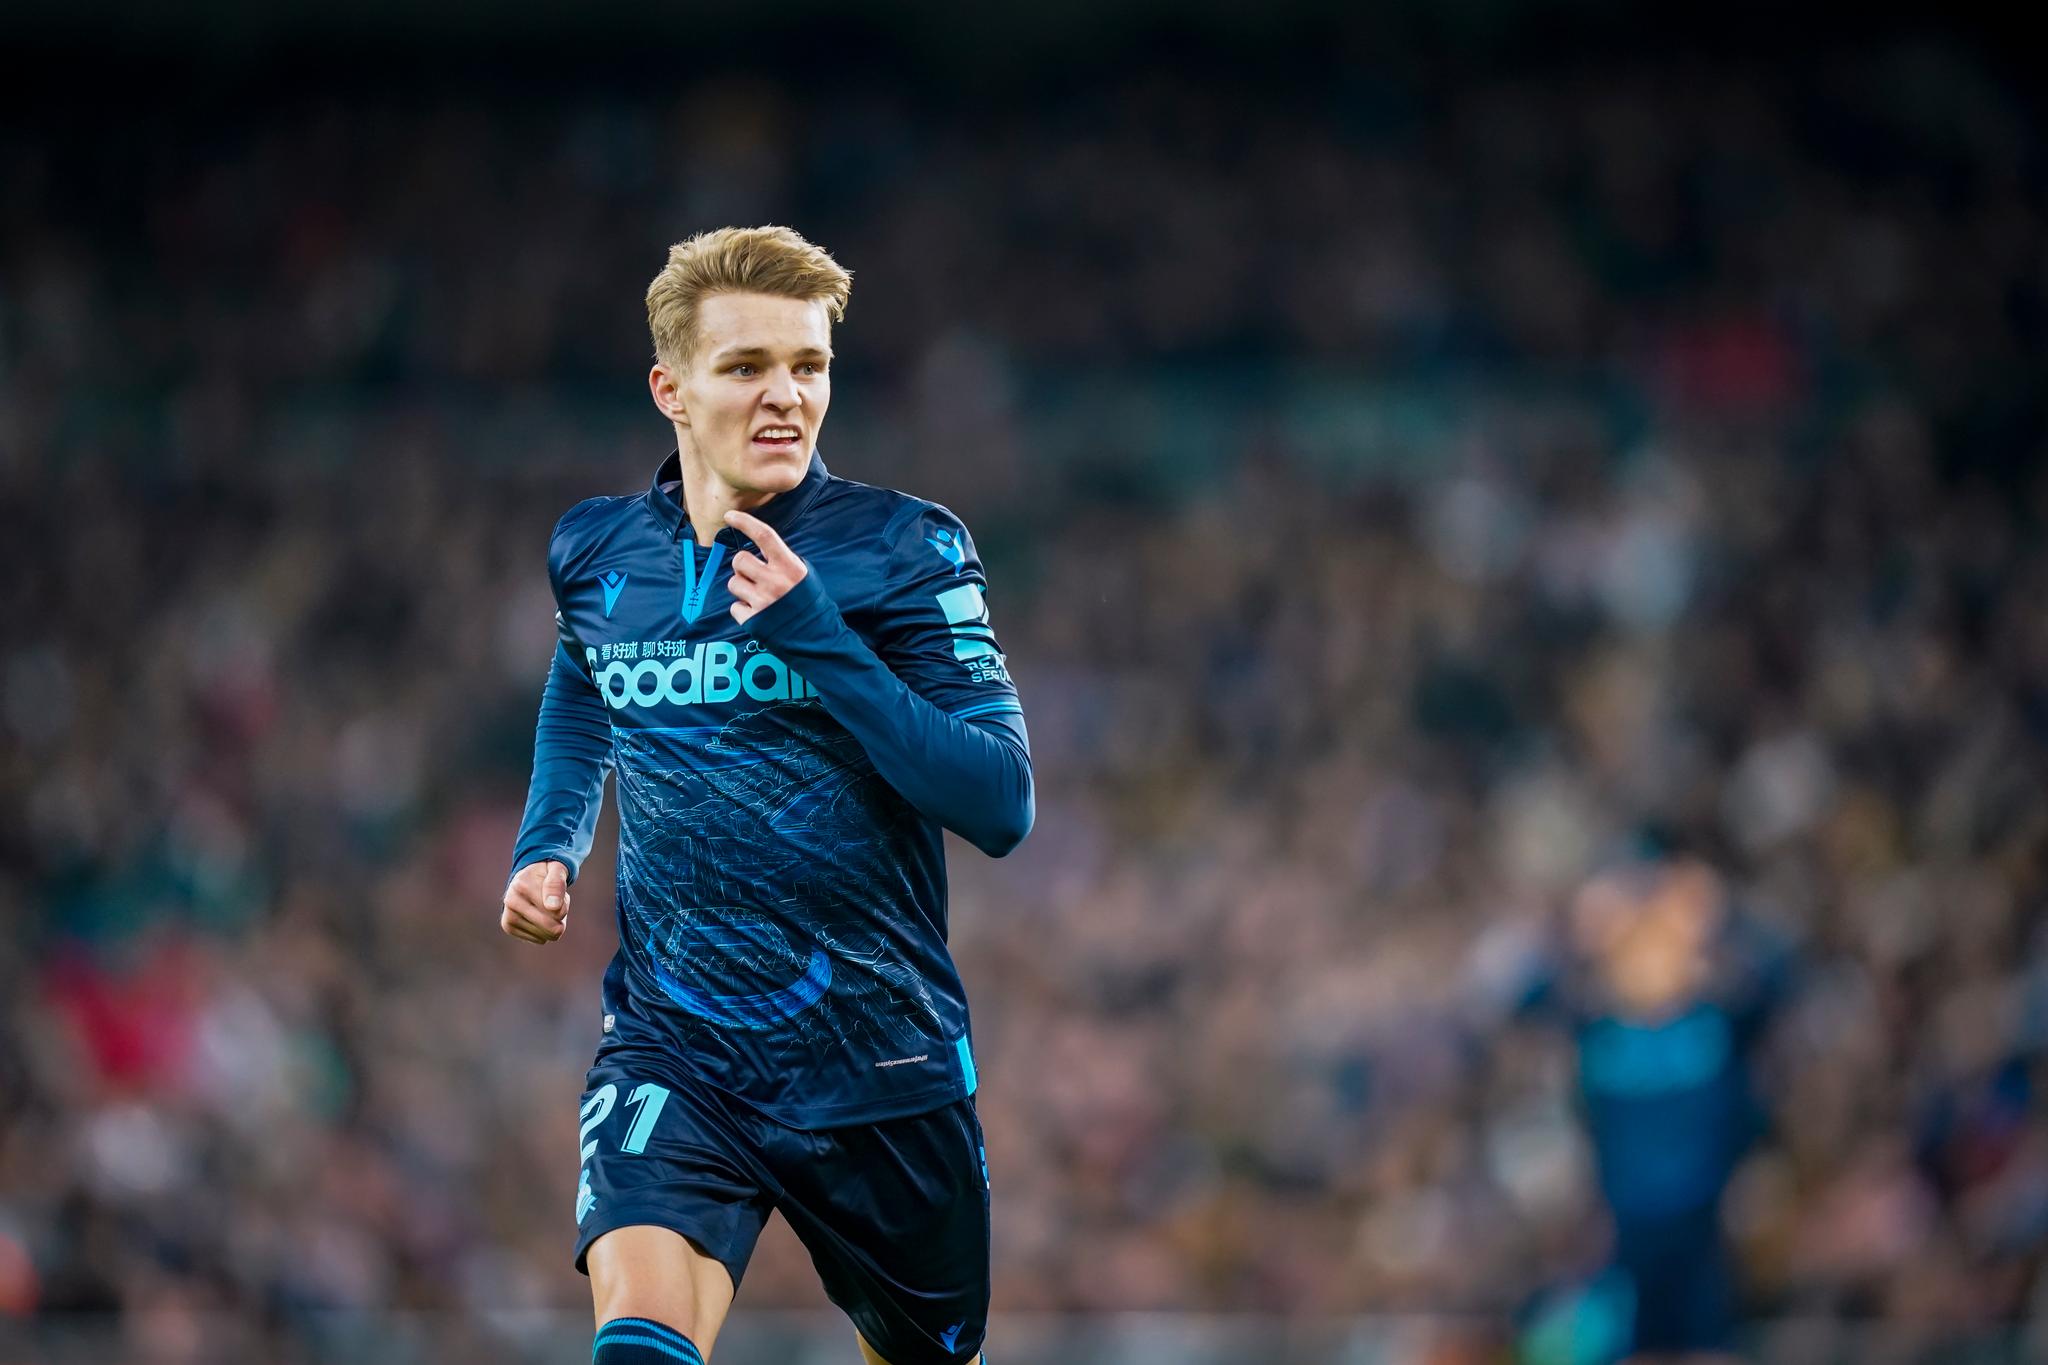 Martin Ødegaards prestasjoner i Real Sociedad blir lagt merke til. 